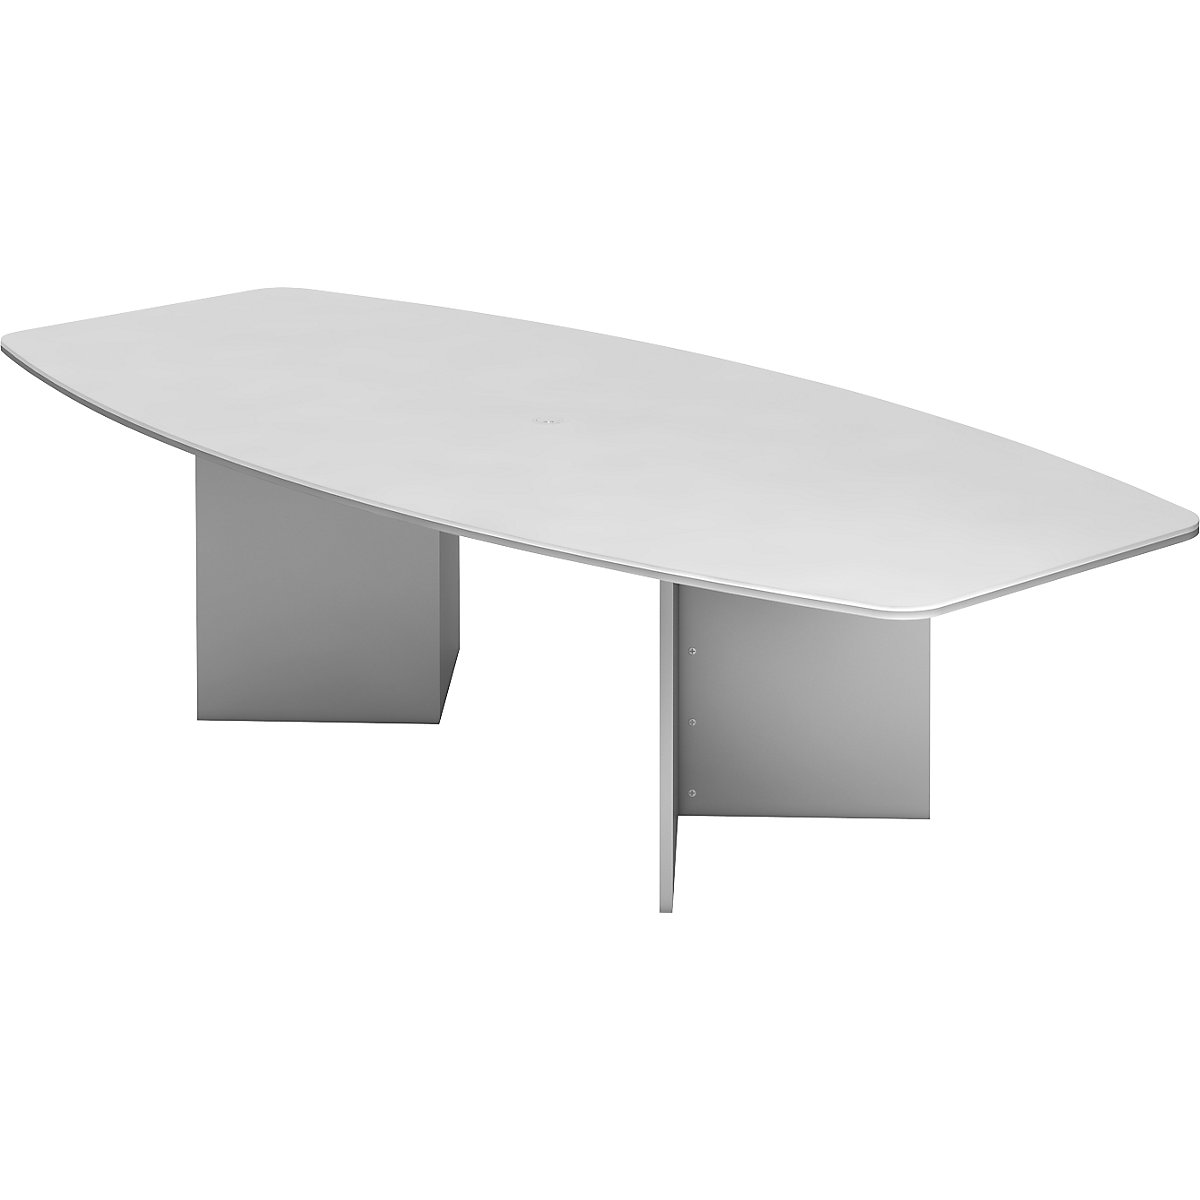 Konferenčný stôl, variant podstavca bočnice, pre 10 osôb, biela-5